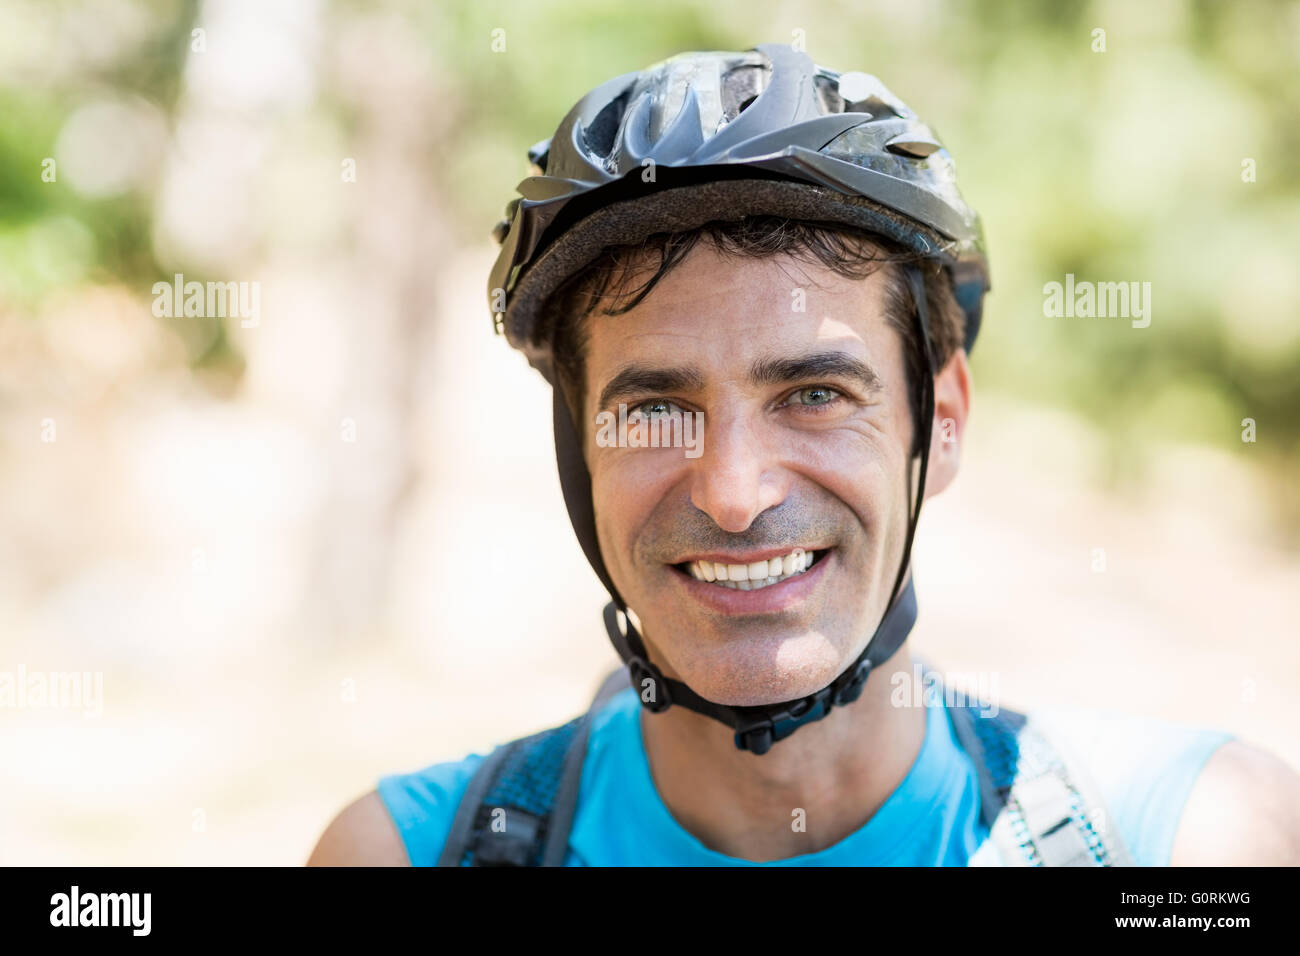 Porträt von einem Mann-Bike-Fahrer lächelnd Stockfoto